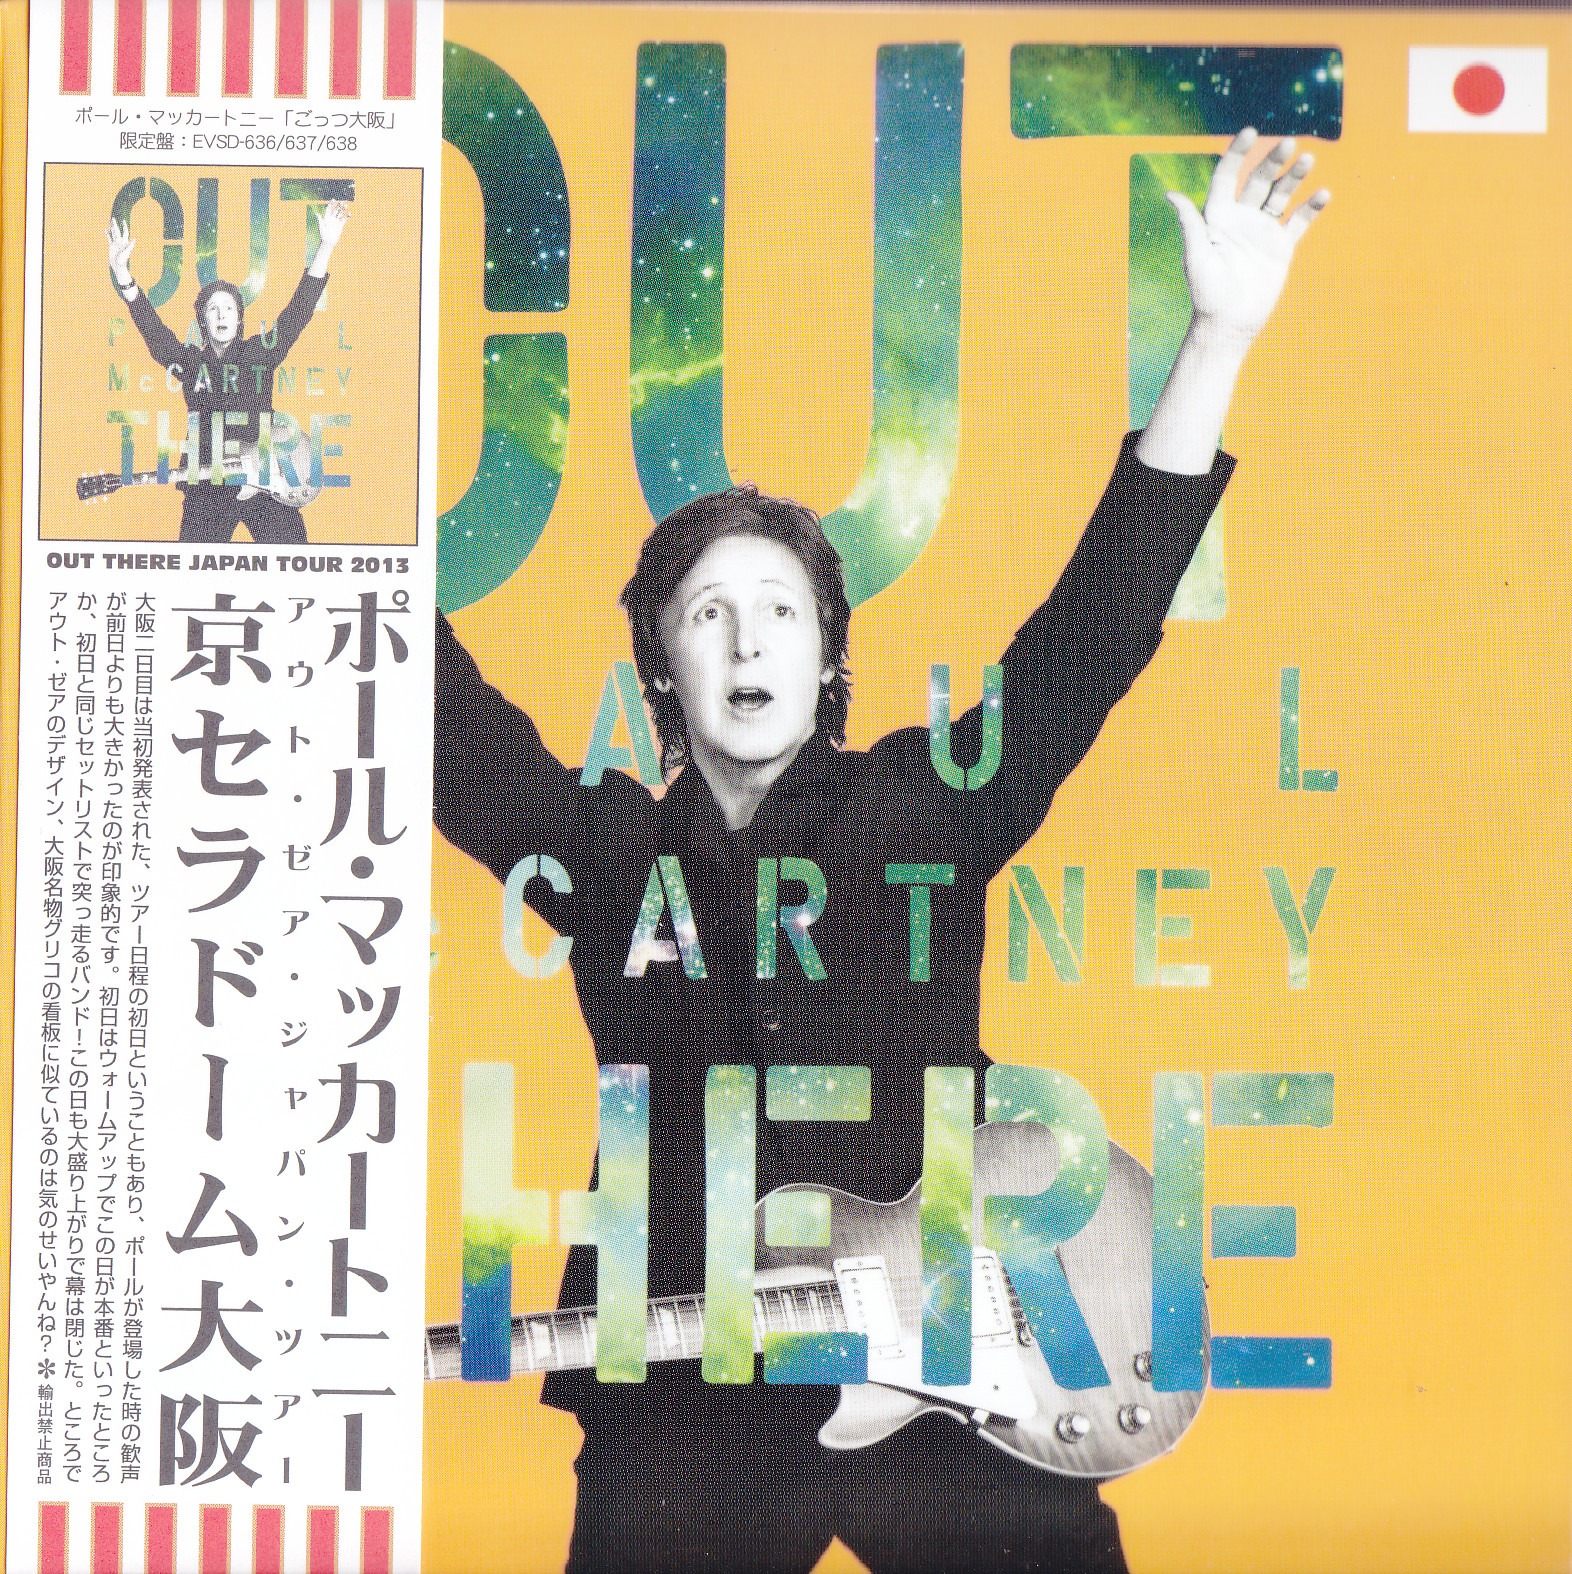 上品な 洋楽 BOX 2DVD 13CD Japan 2013 McCartney Paul 洋楽 - sky9eg.com